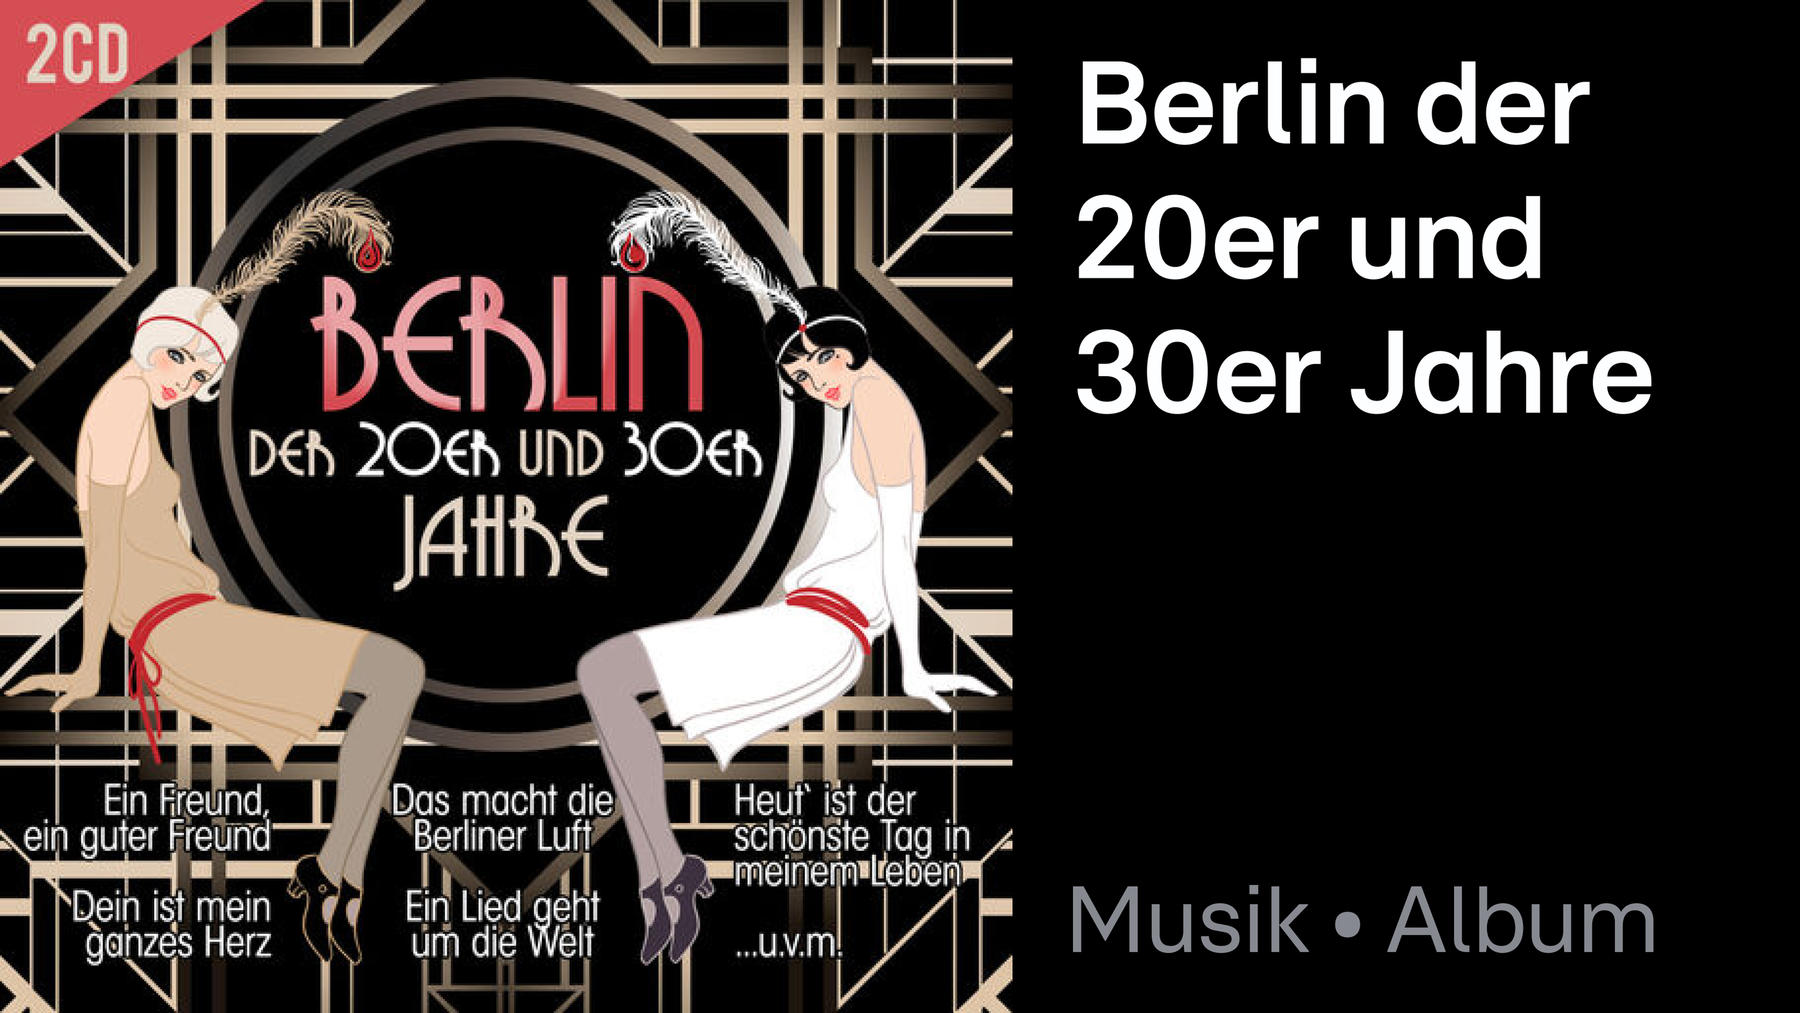 Album: Berlin der 20er und 30er Jahre